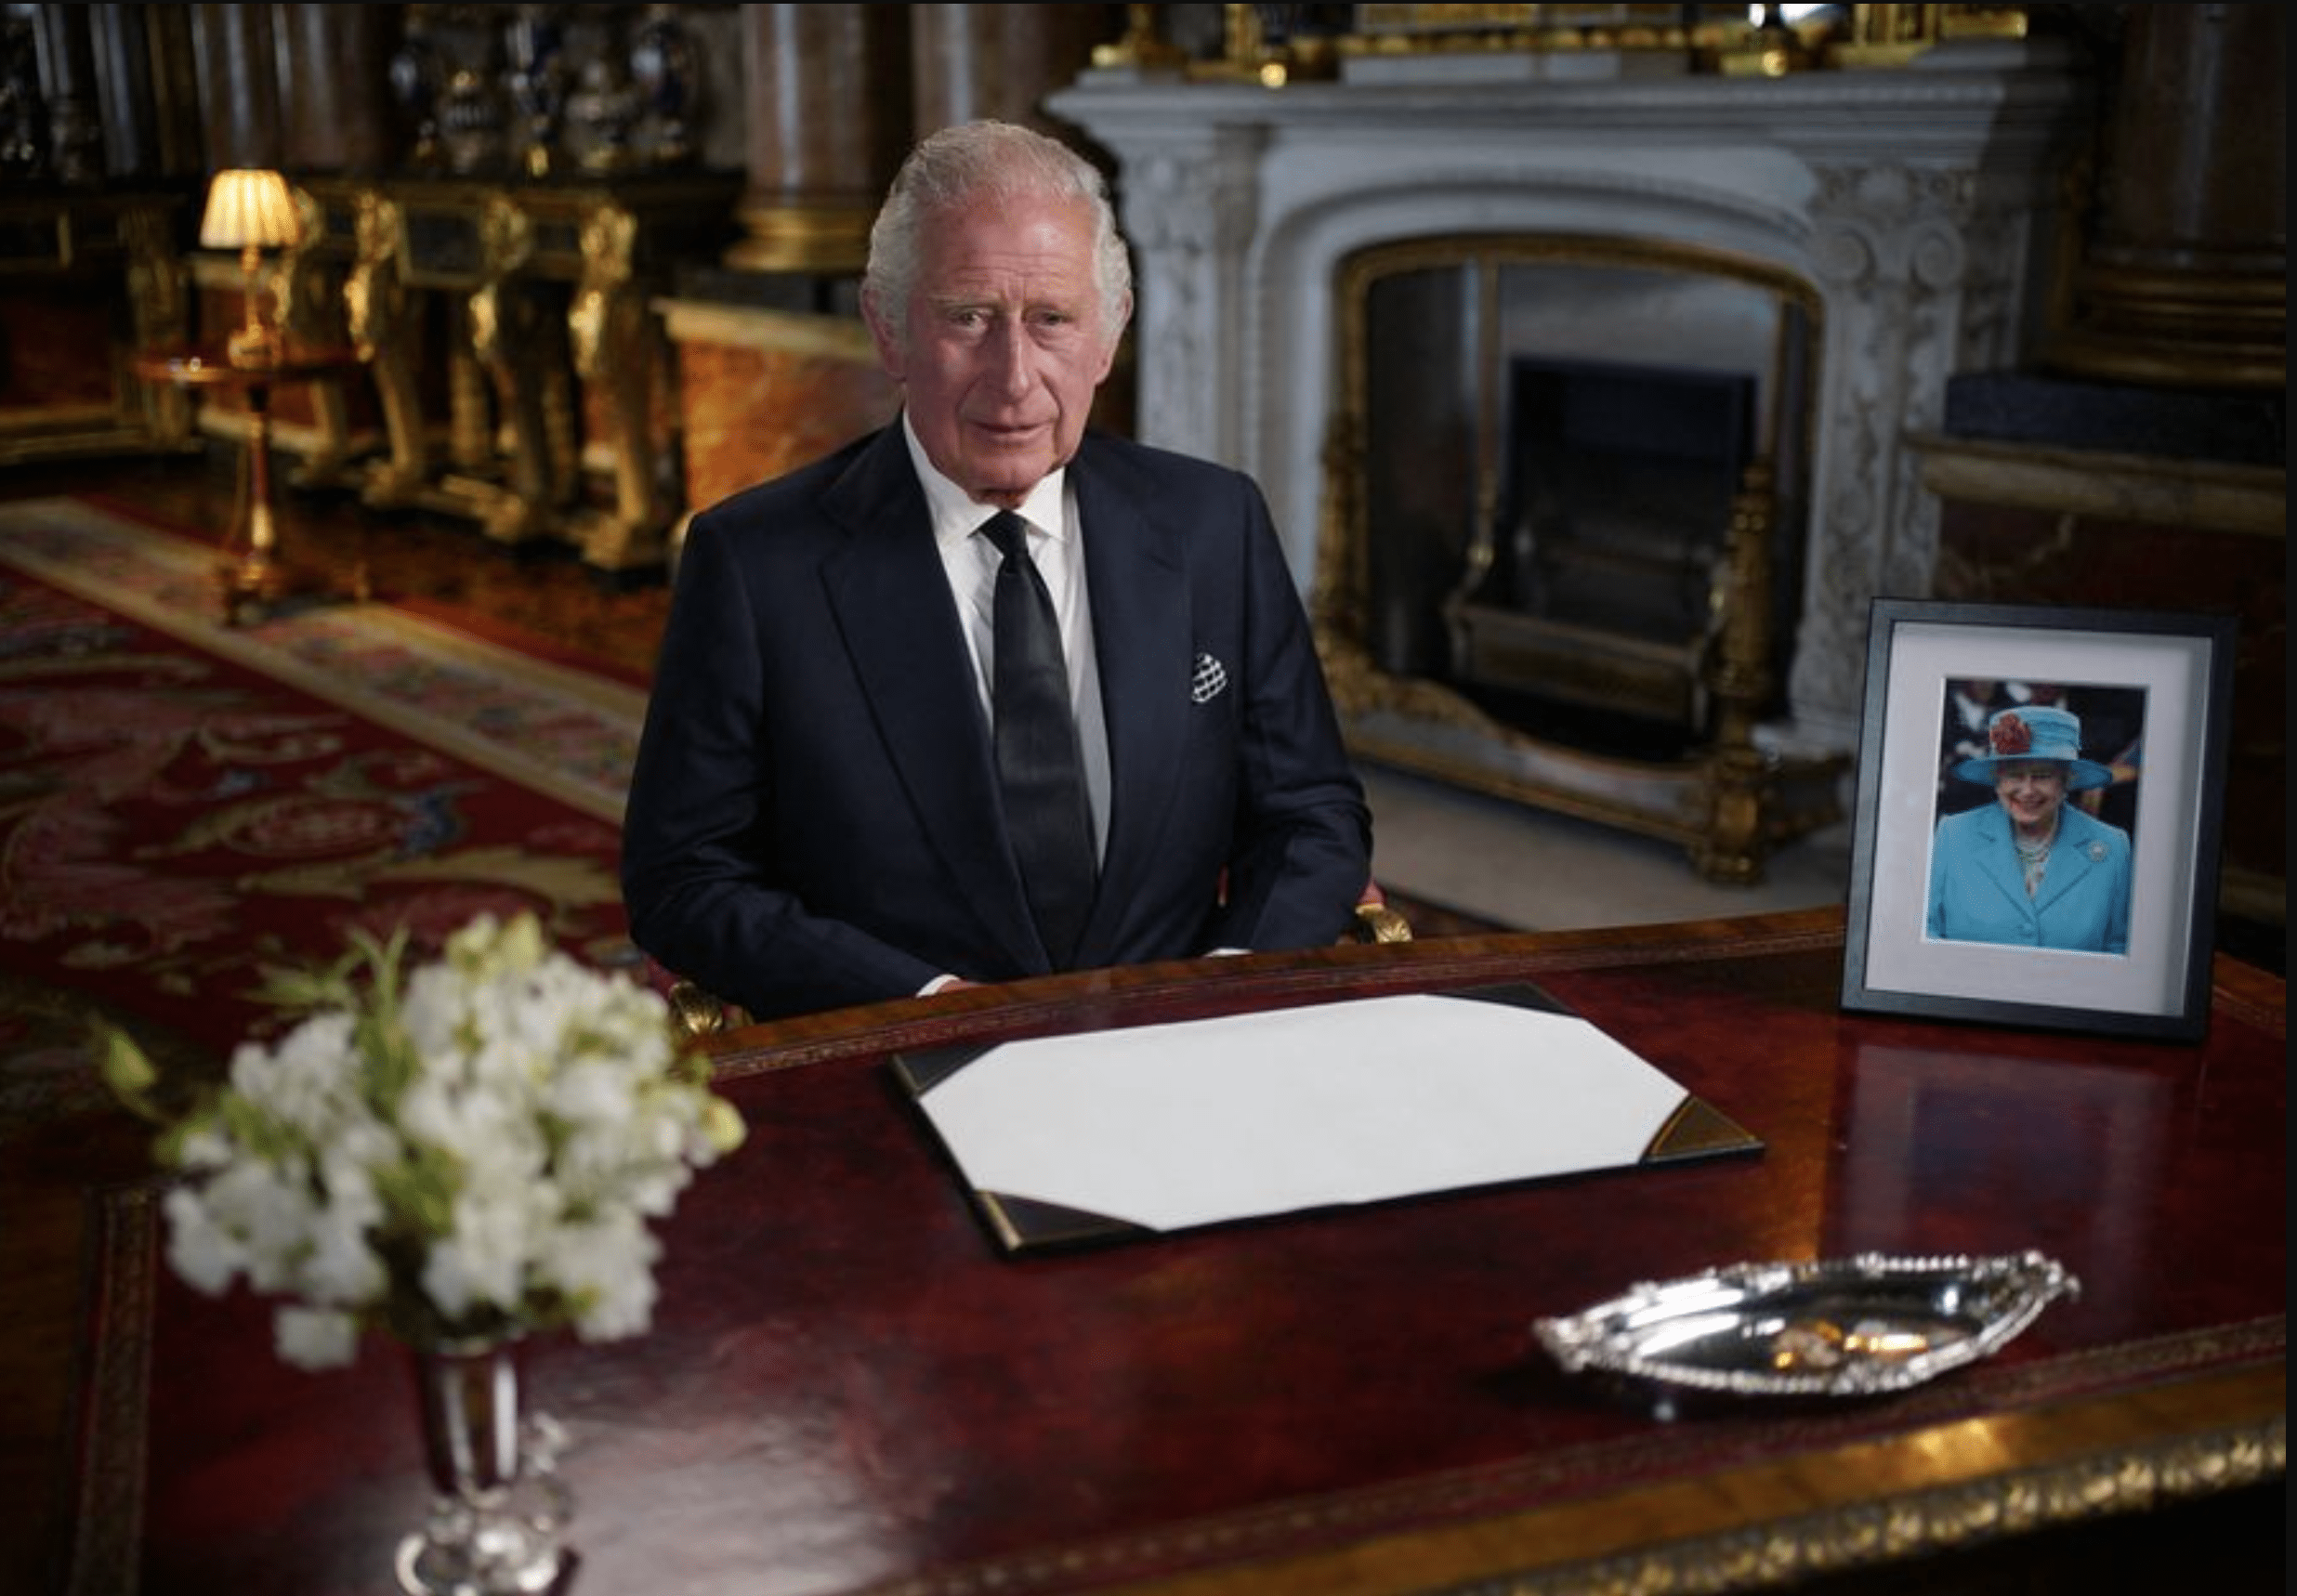 مراسم کانادایی برای اعلان جلوس شاه چارلز سوم بر تحت سلطنت روز یکشنبه برگزار می شود